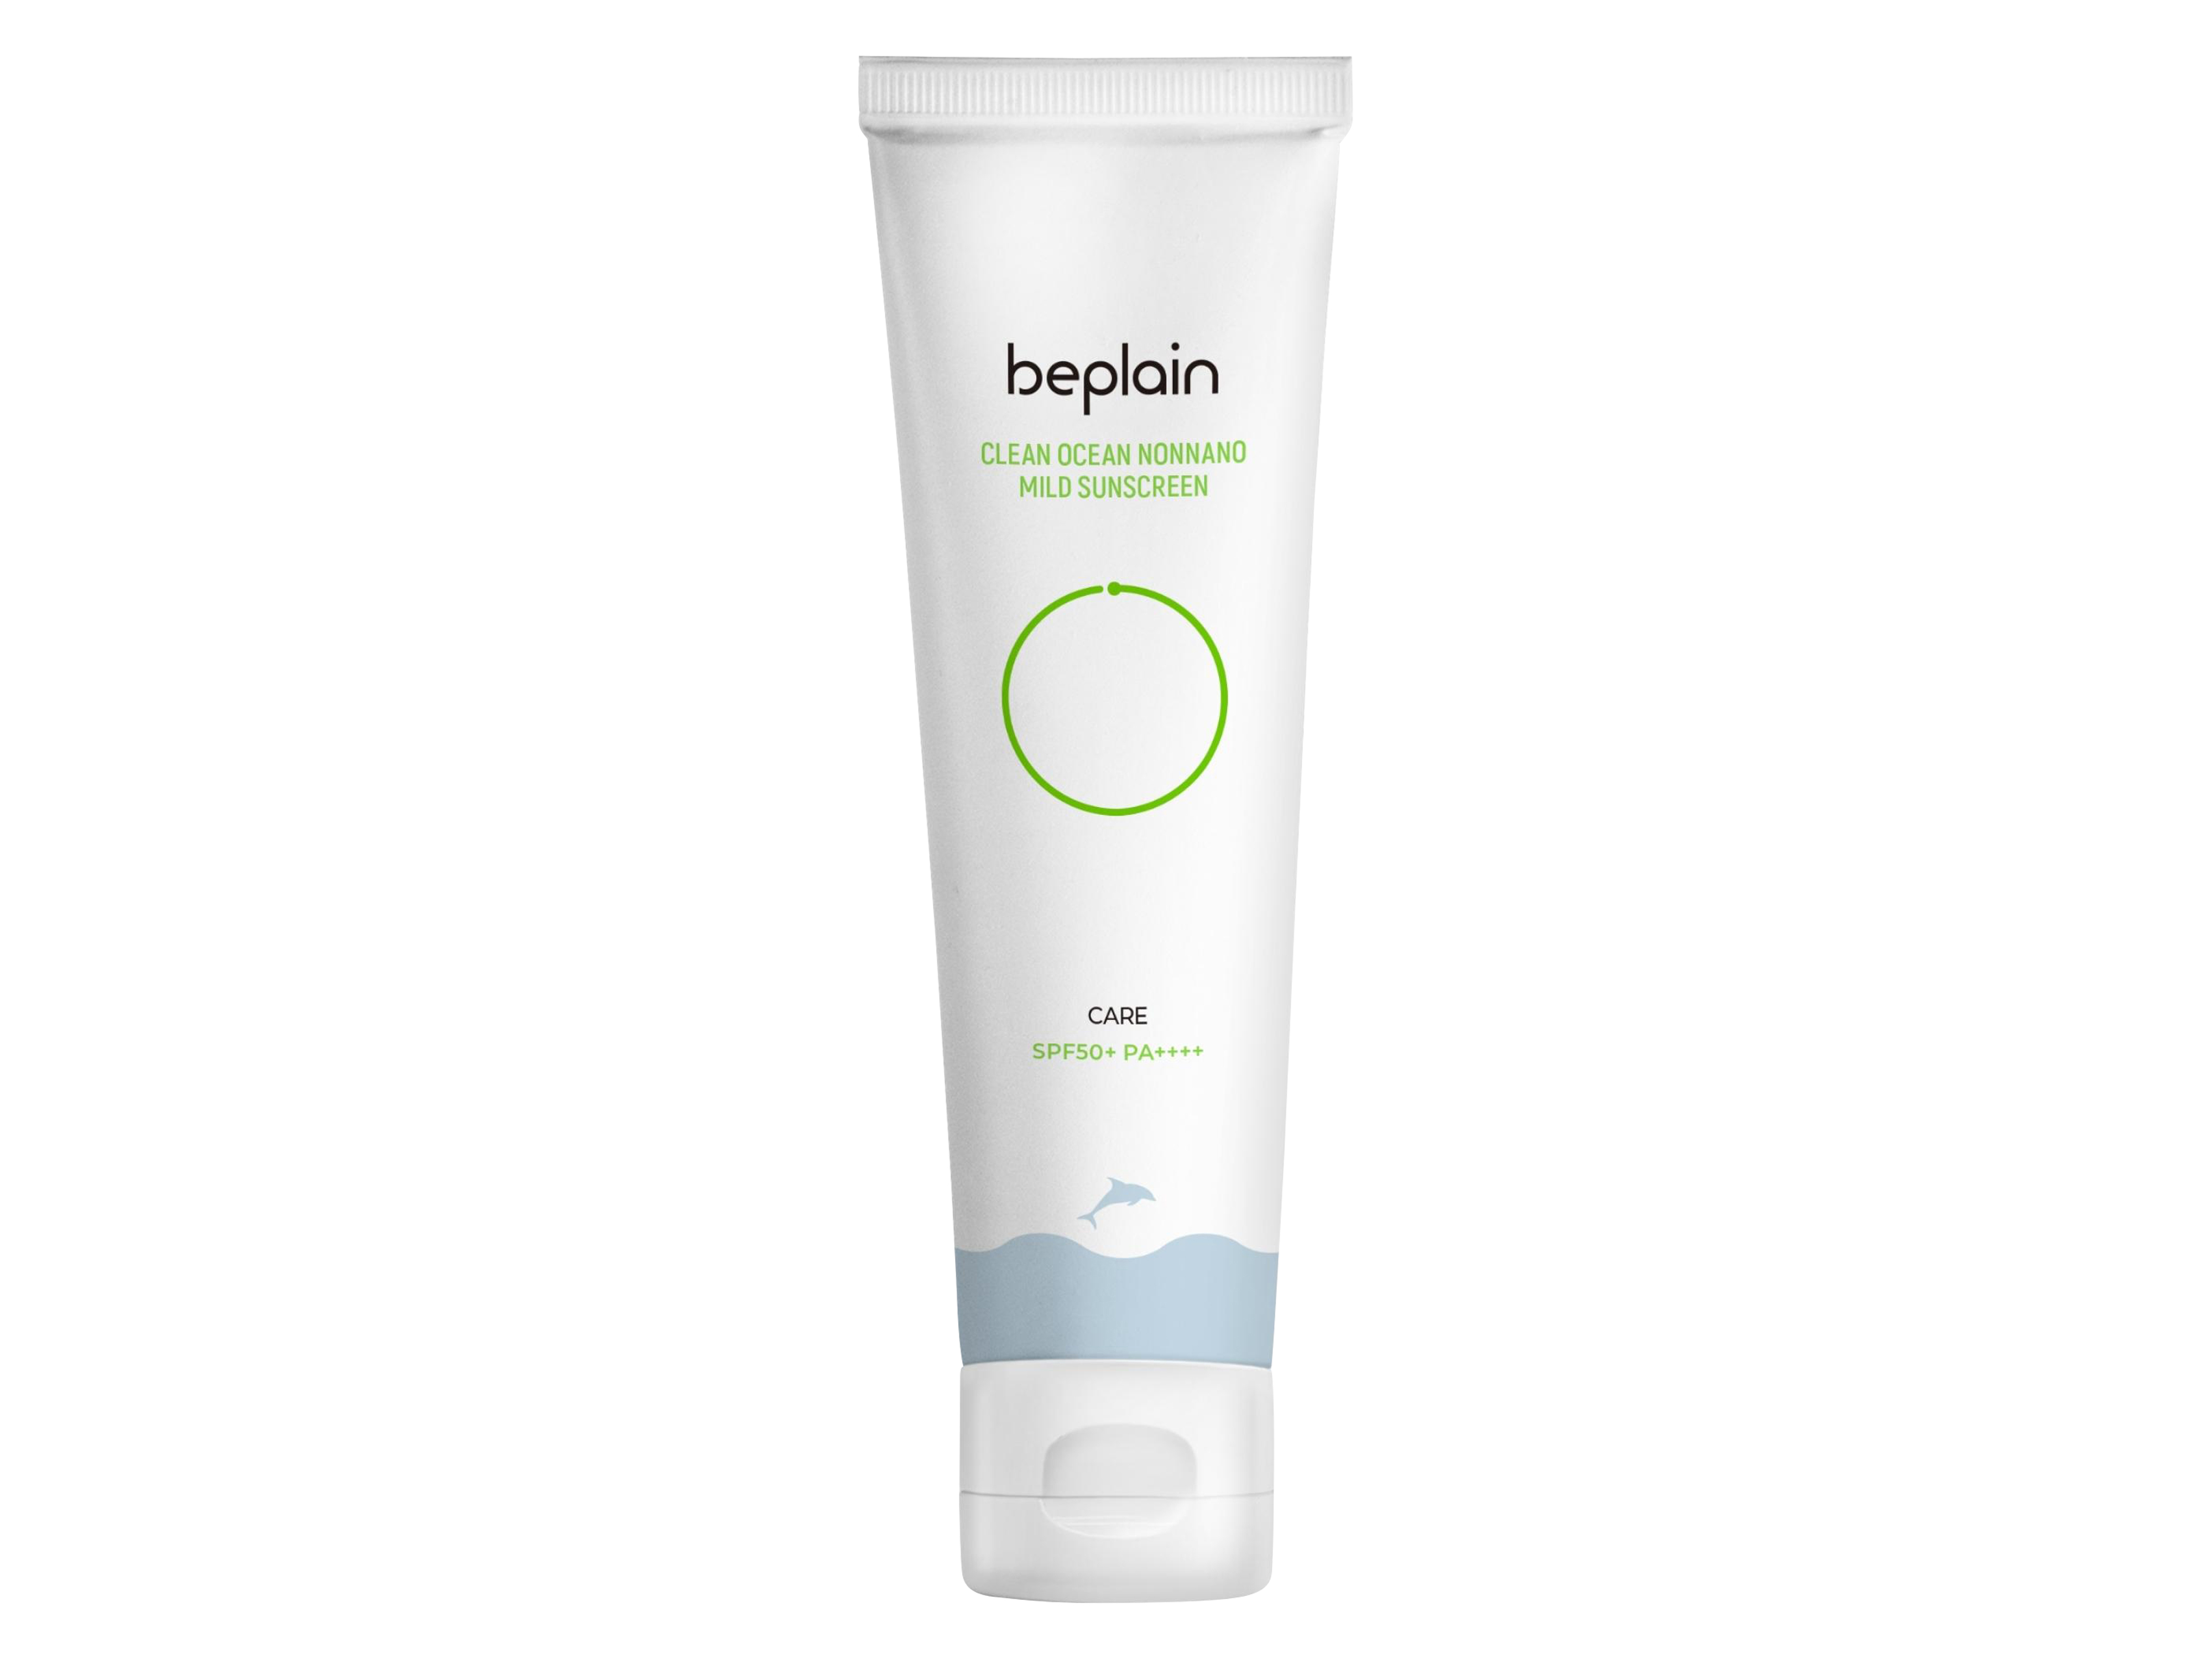 Beplain Clean Ocean Nonnano Mild Sunscreen, SPF50+ PA++++, 50 ml